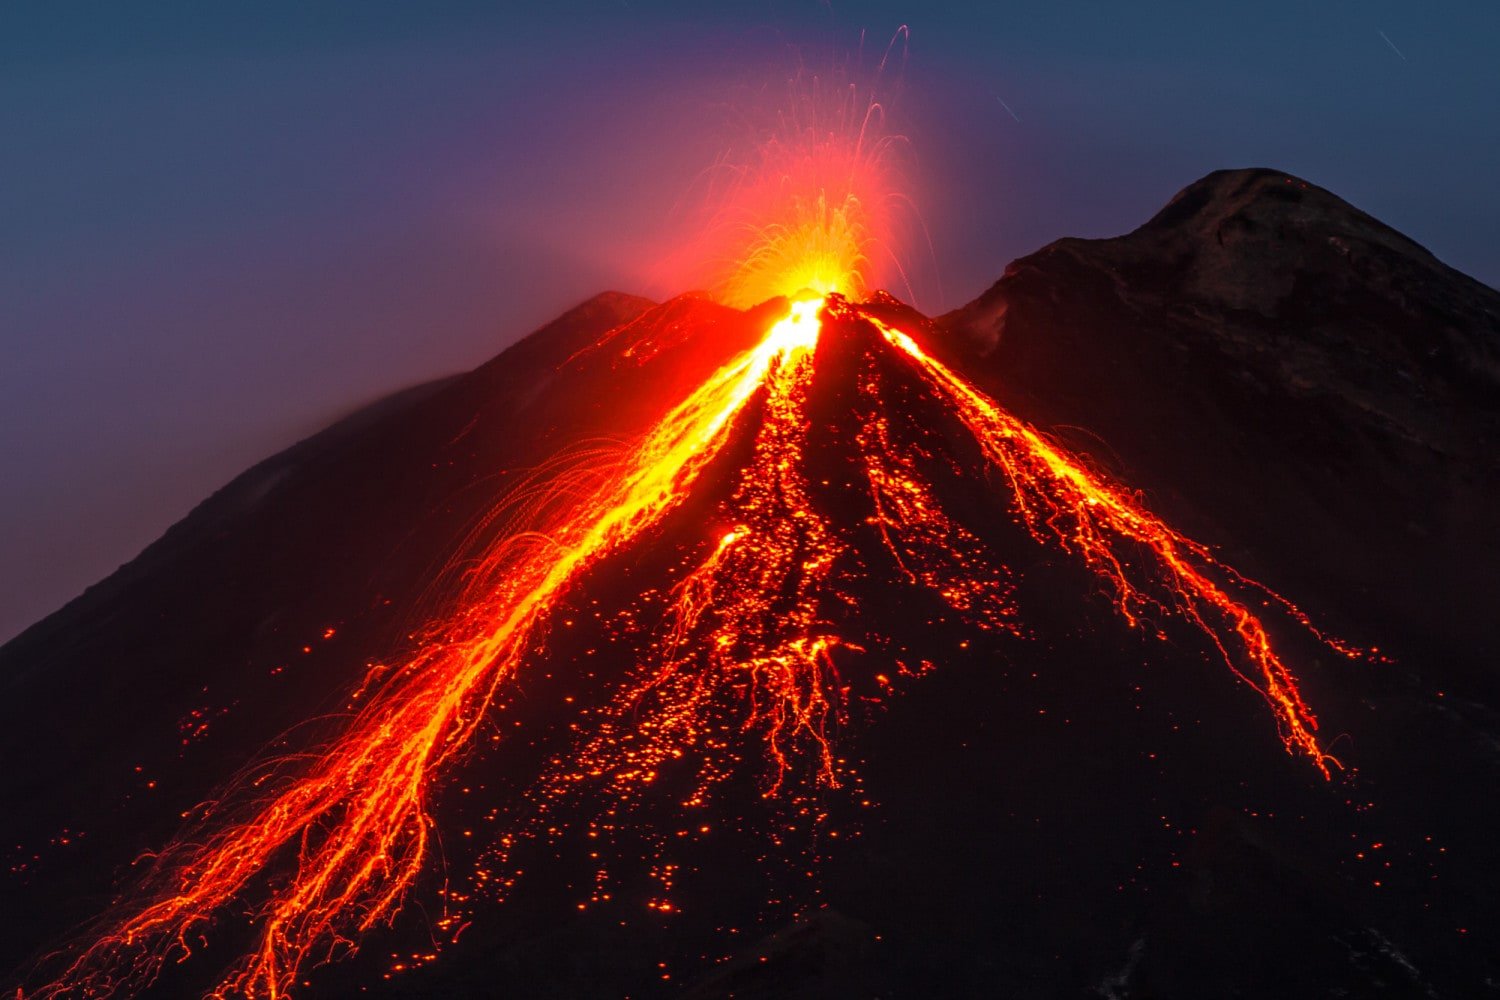 Действует ли вулкан этна